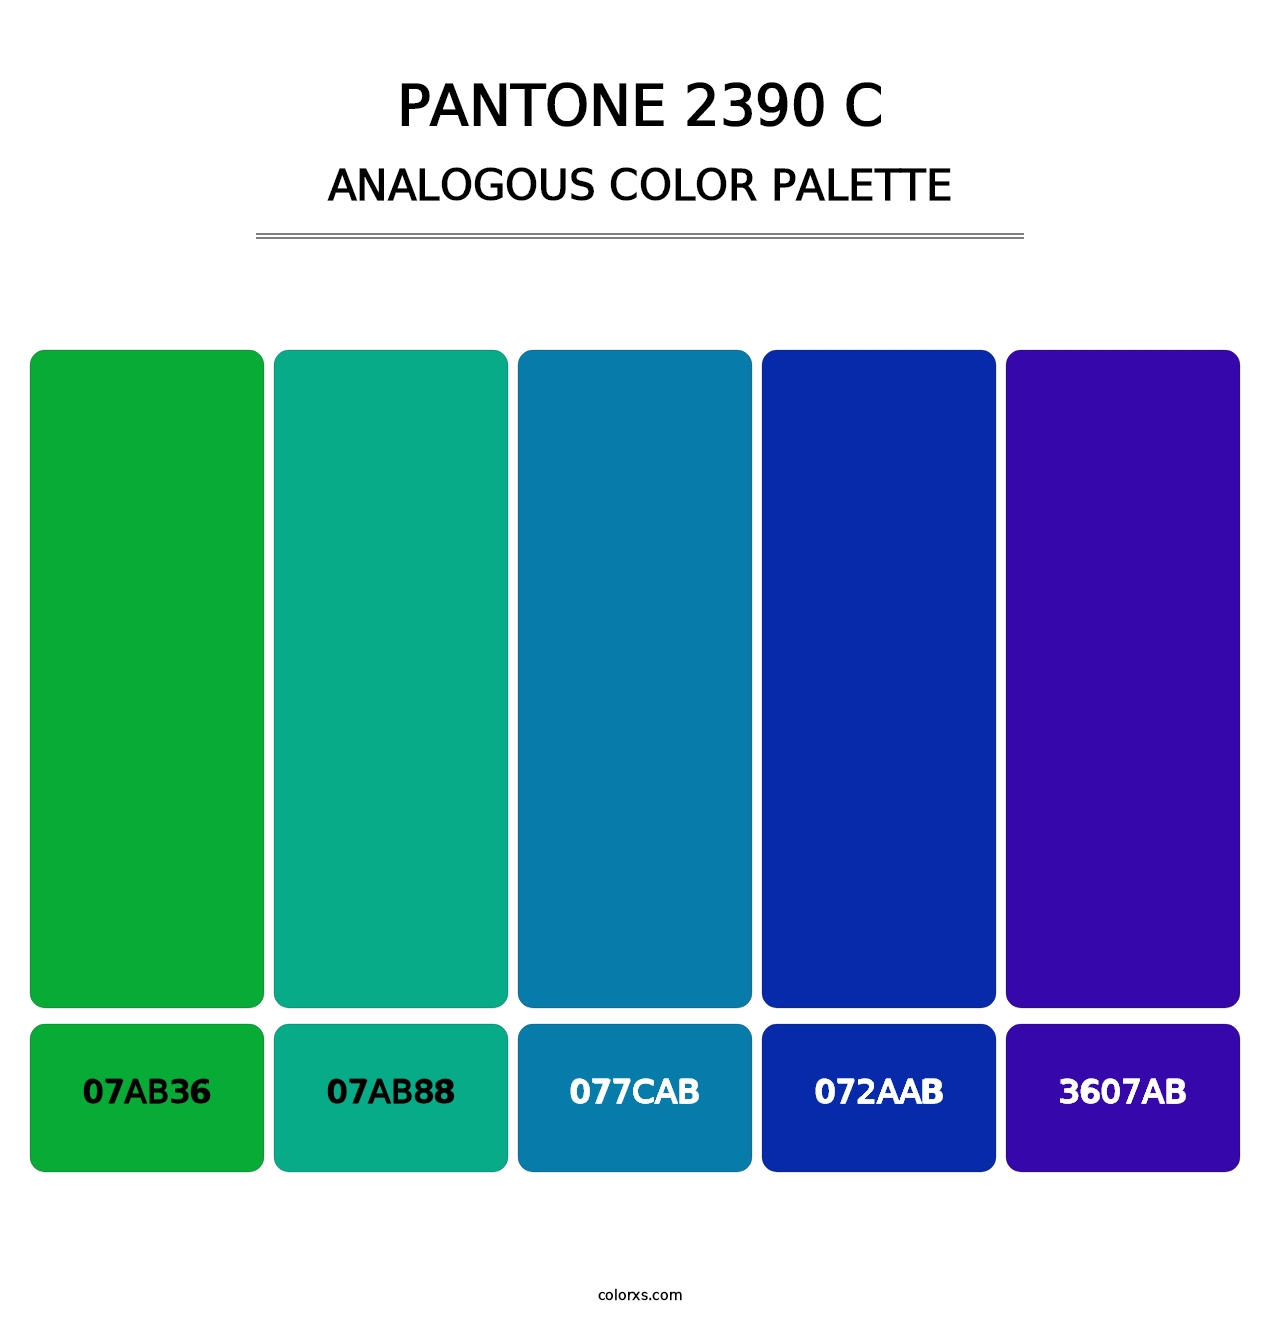 PANTONE 2390 C - Analogous Color Palette